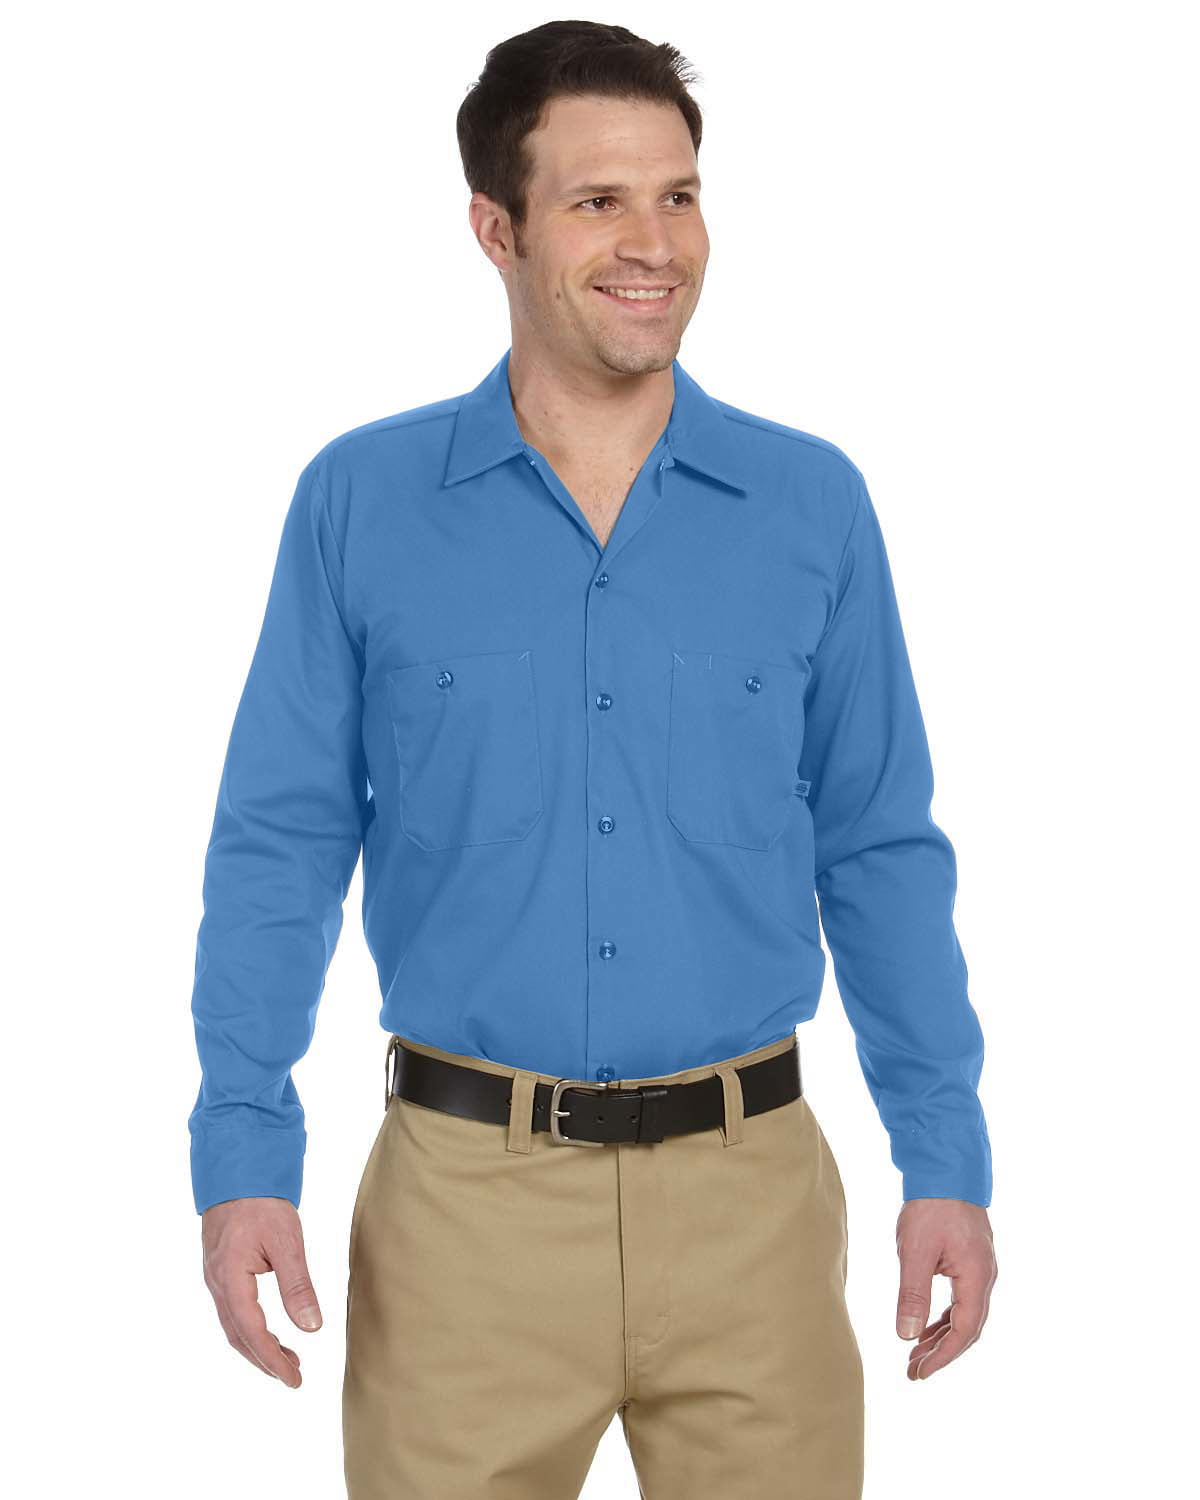 Dickies Ll535 Mens 4.25 Oz Navy Blue Industrial Long Sleeve Work Shirt